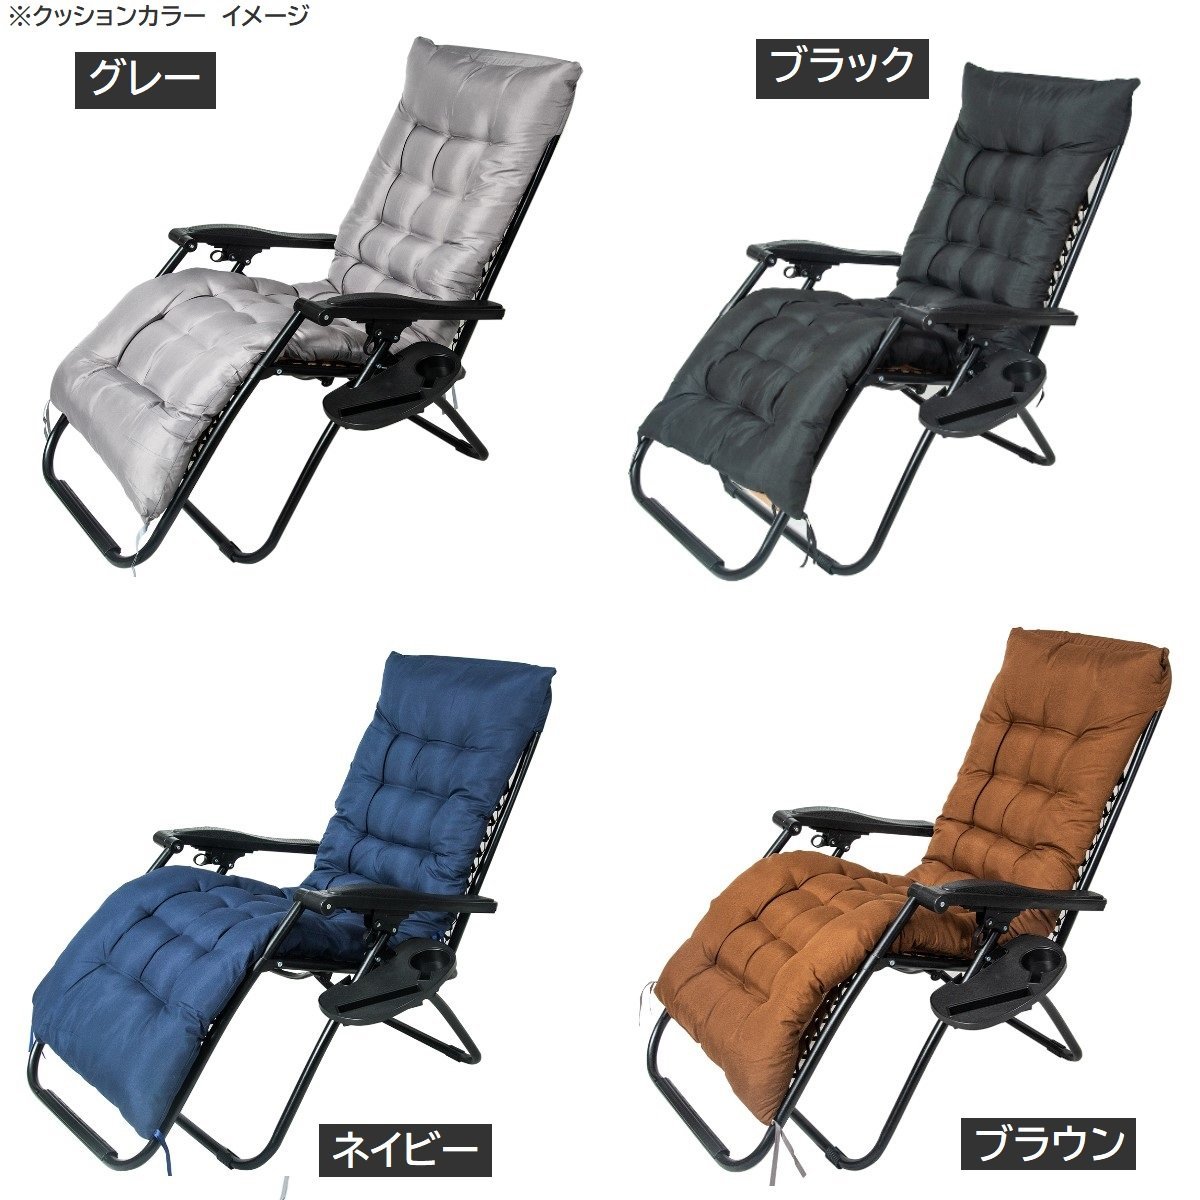 [ бесплатная доставка ] стул подушка сиденье подушка подушка для сидения * уличный * салон тоже * выбор цвета *